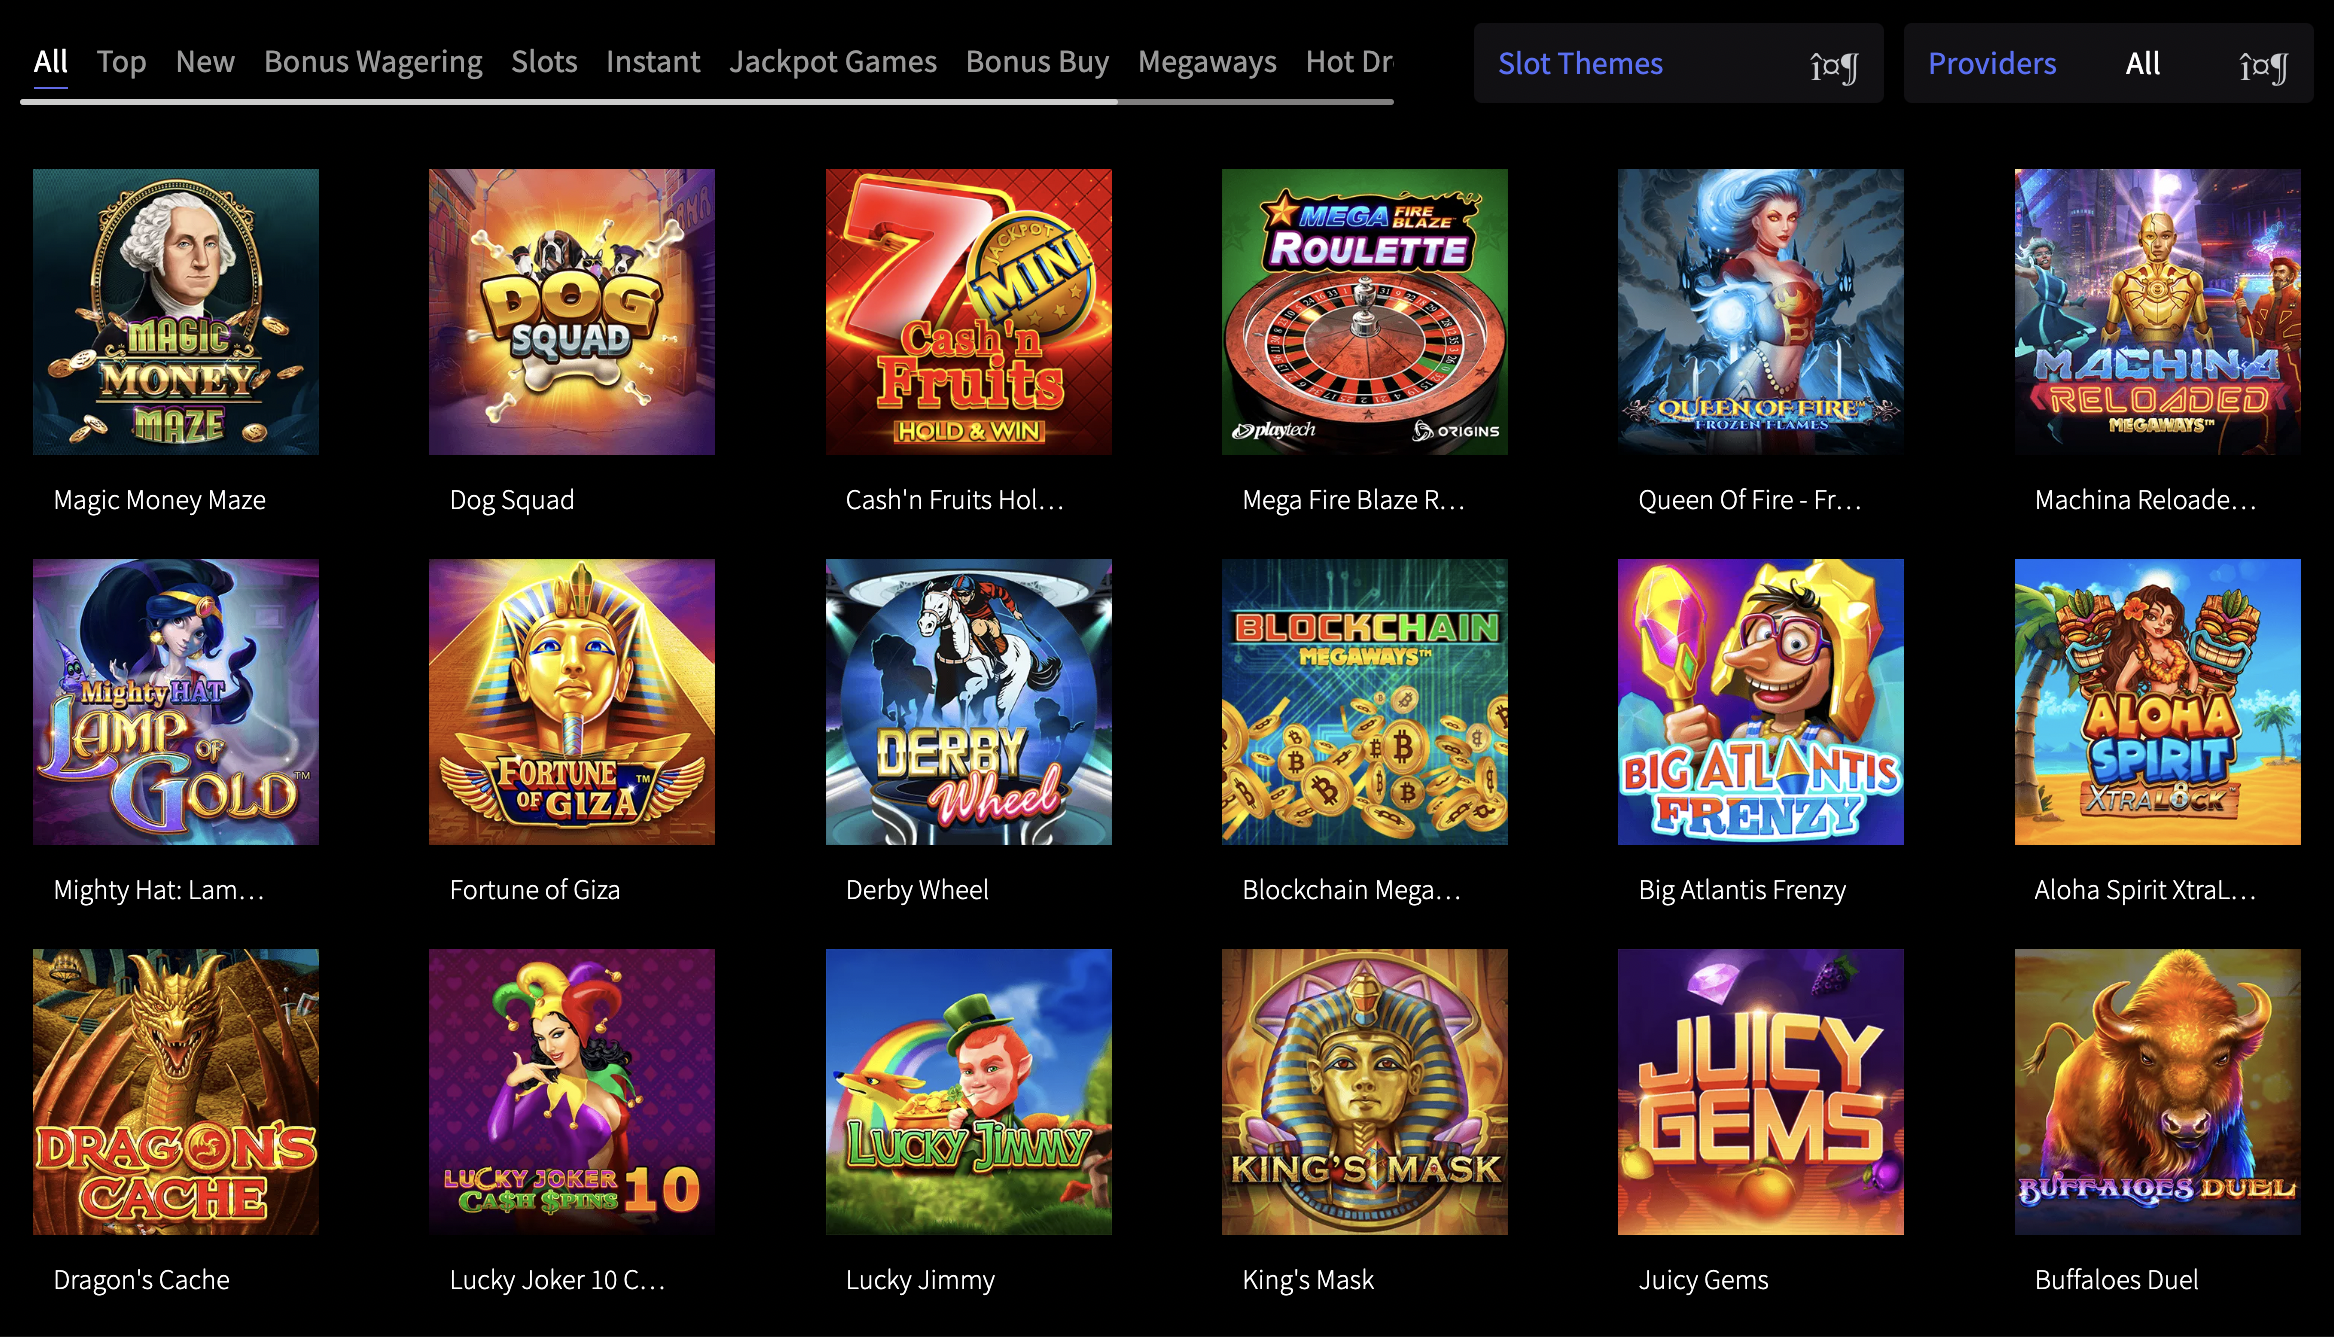 mirax casino review - games and slots